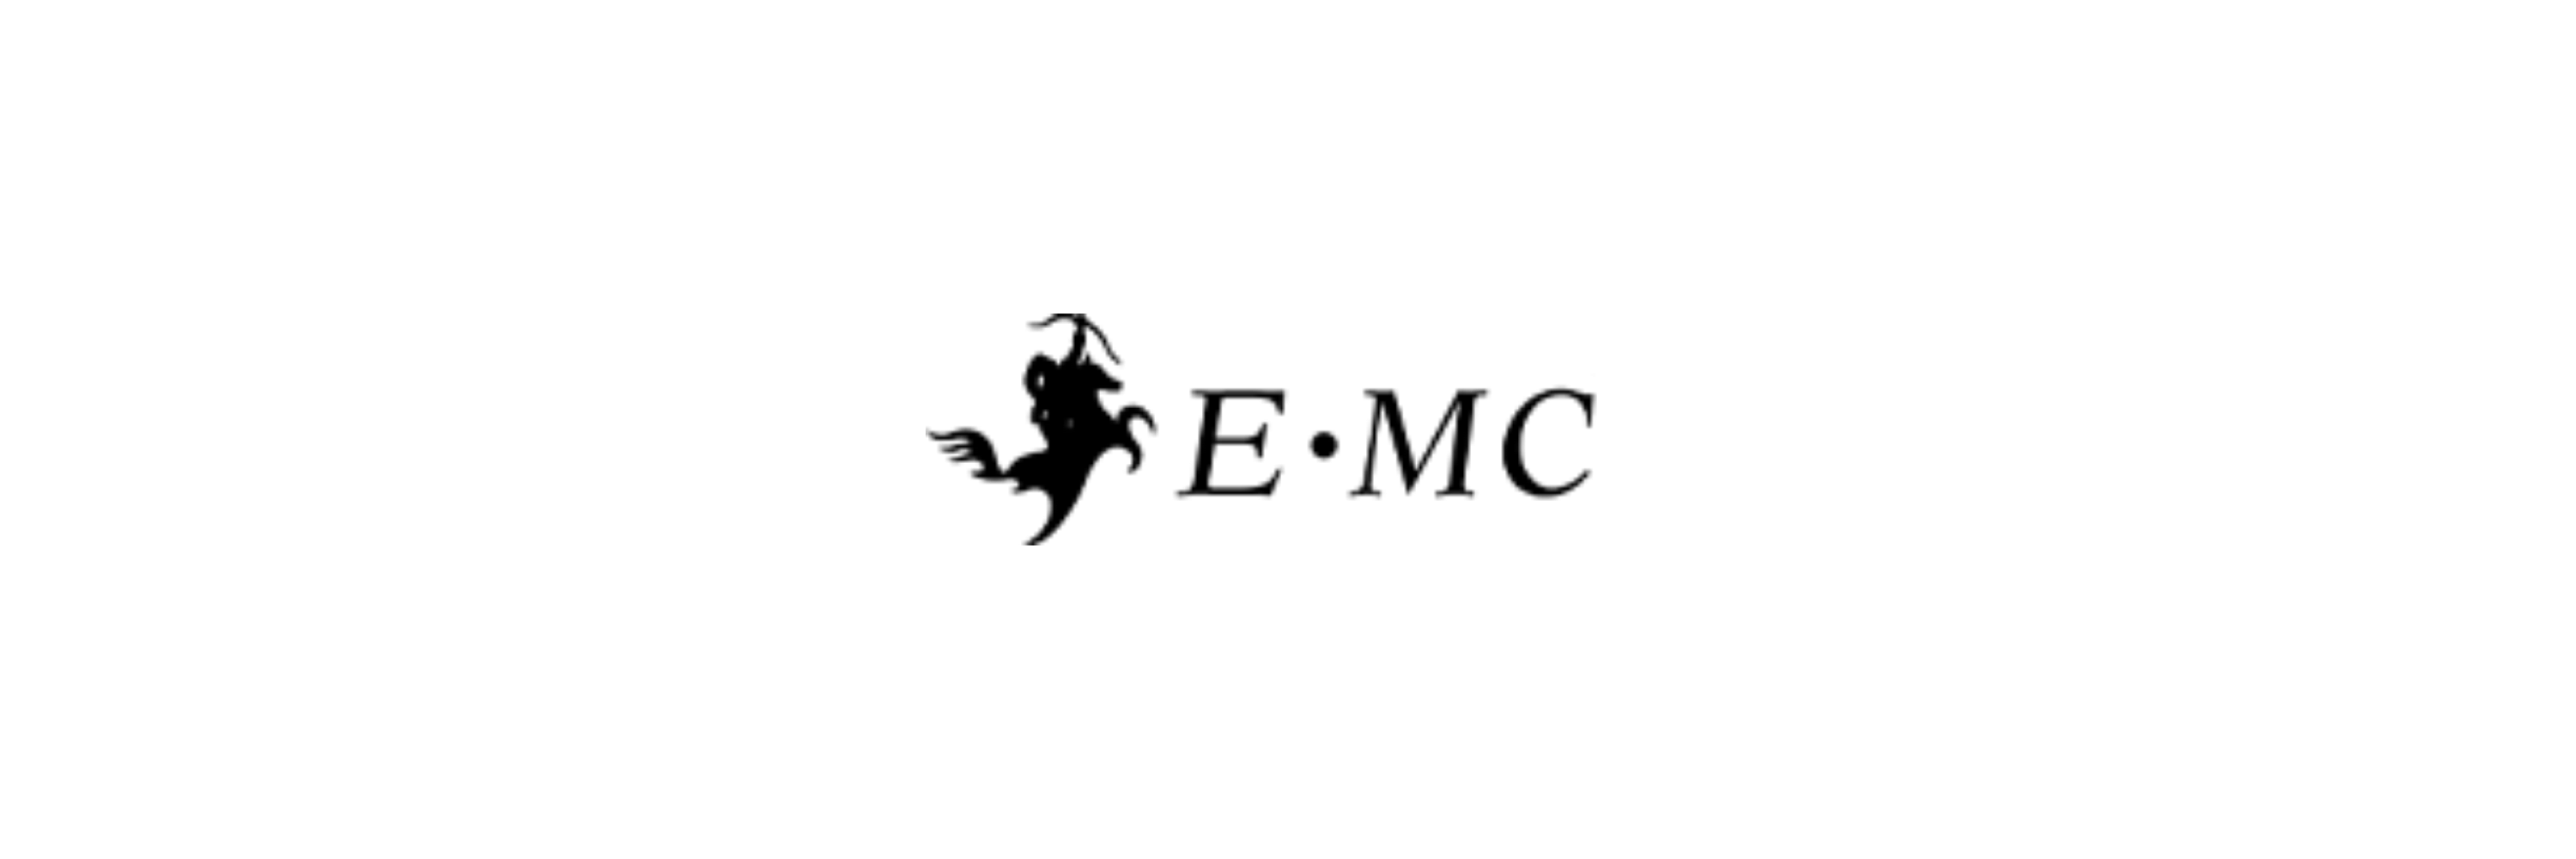 E.MC - Klenk Maschinenhandel